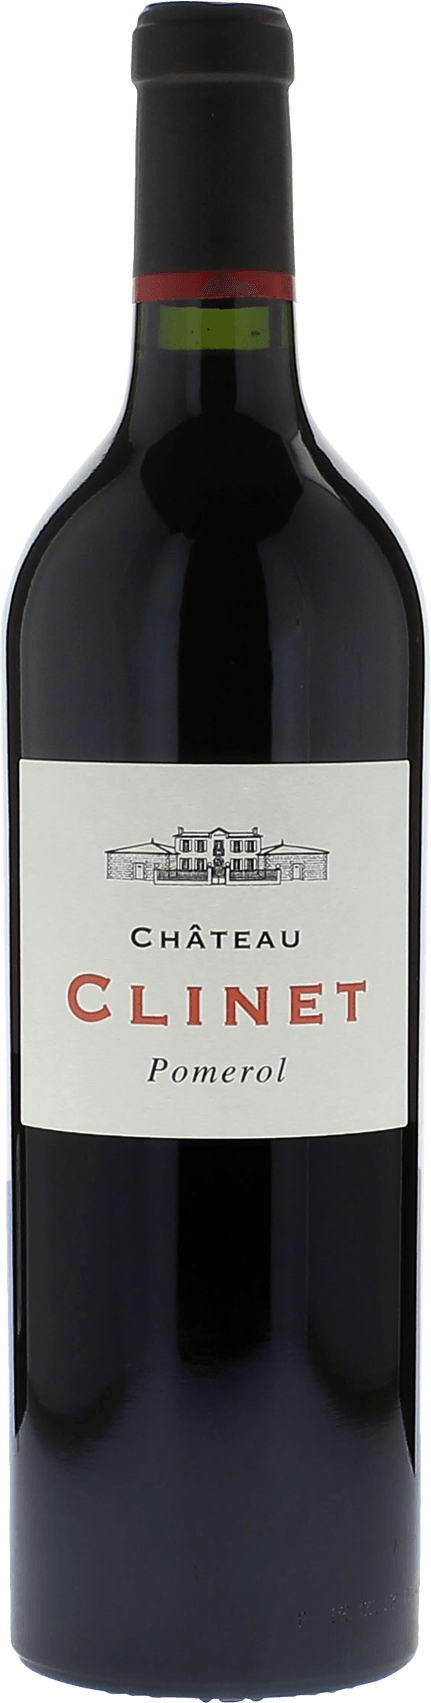 Clinet 2016  Pomerol, Bordeaux rouge